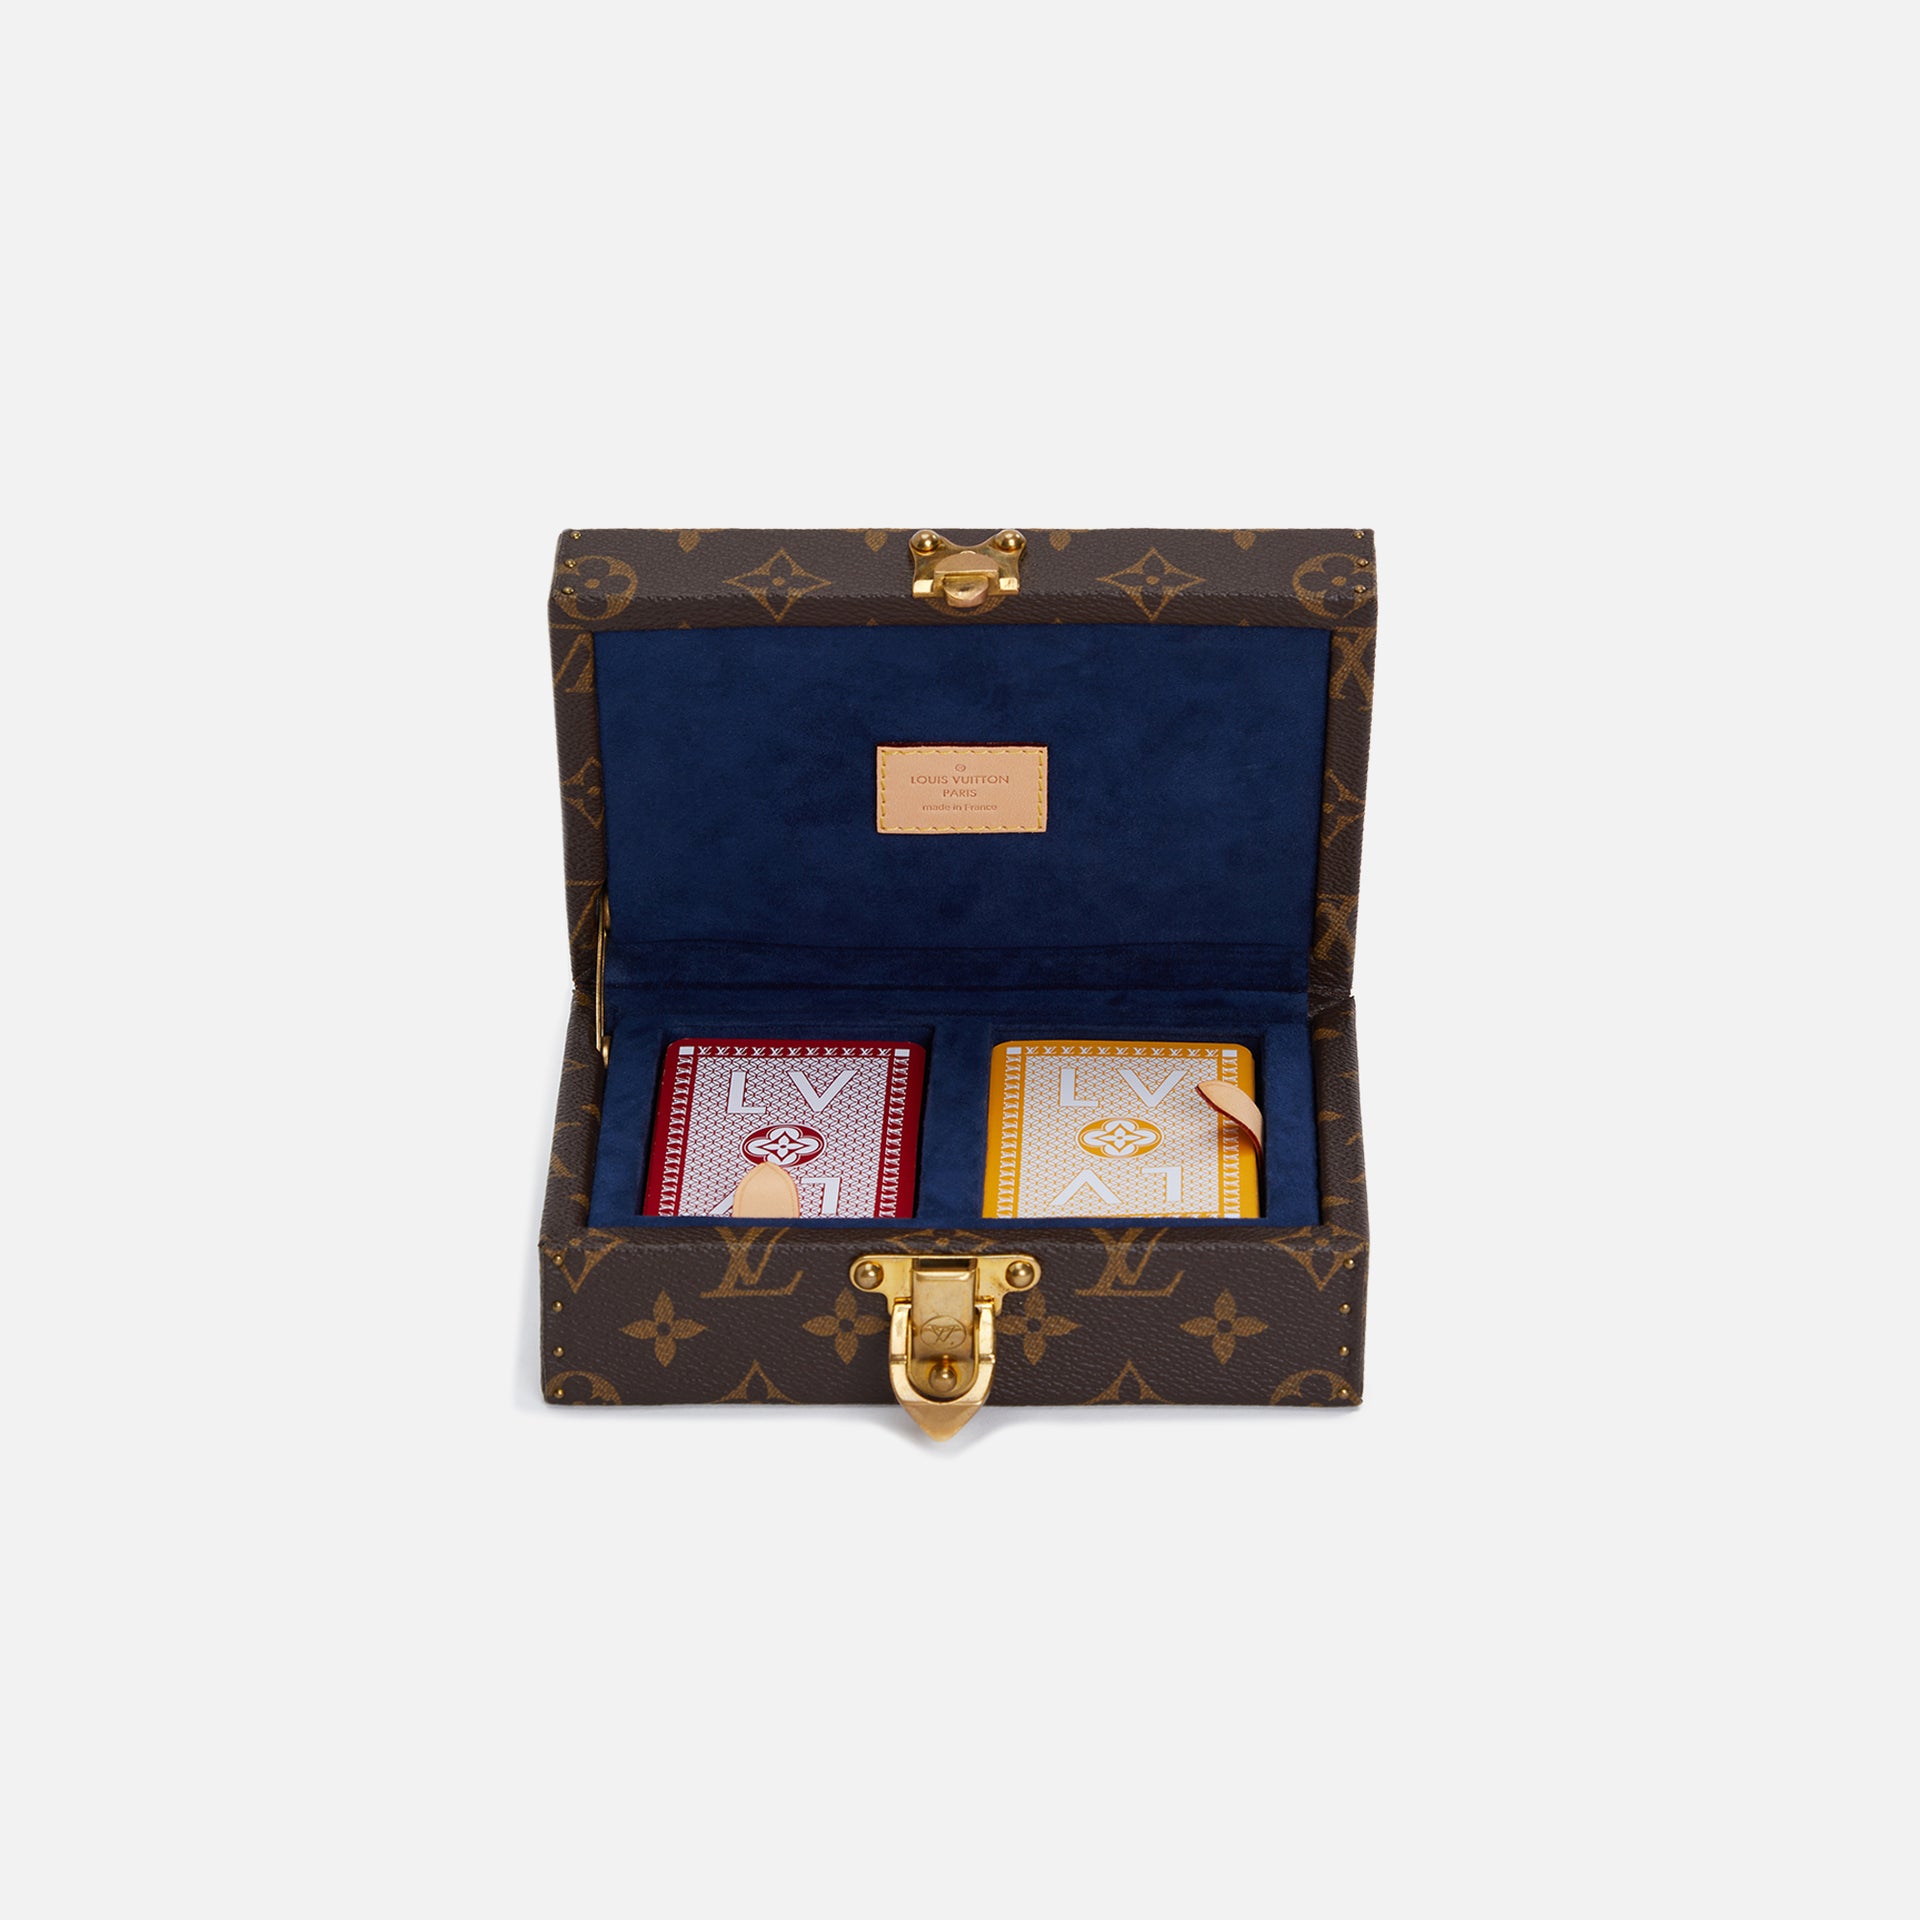 WGACA Louis Vuitton clutch Monogram Card Game Box